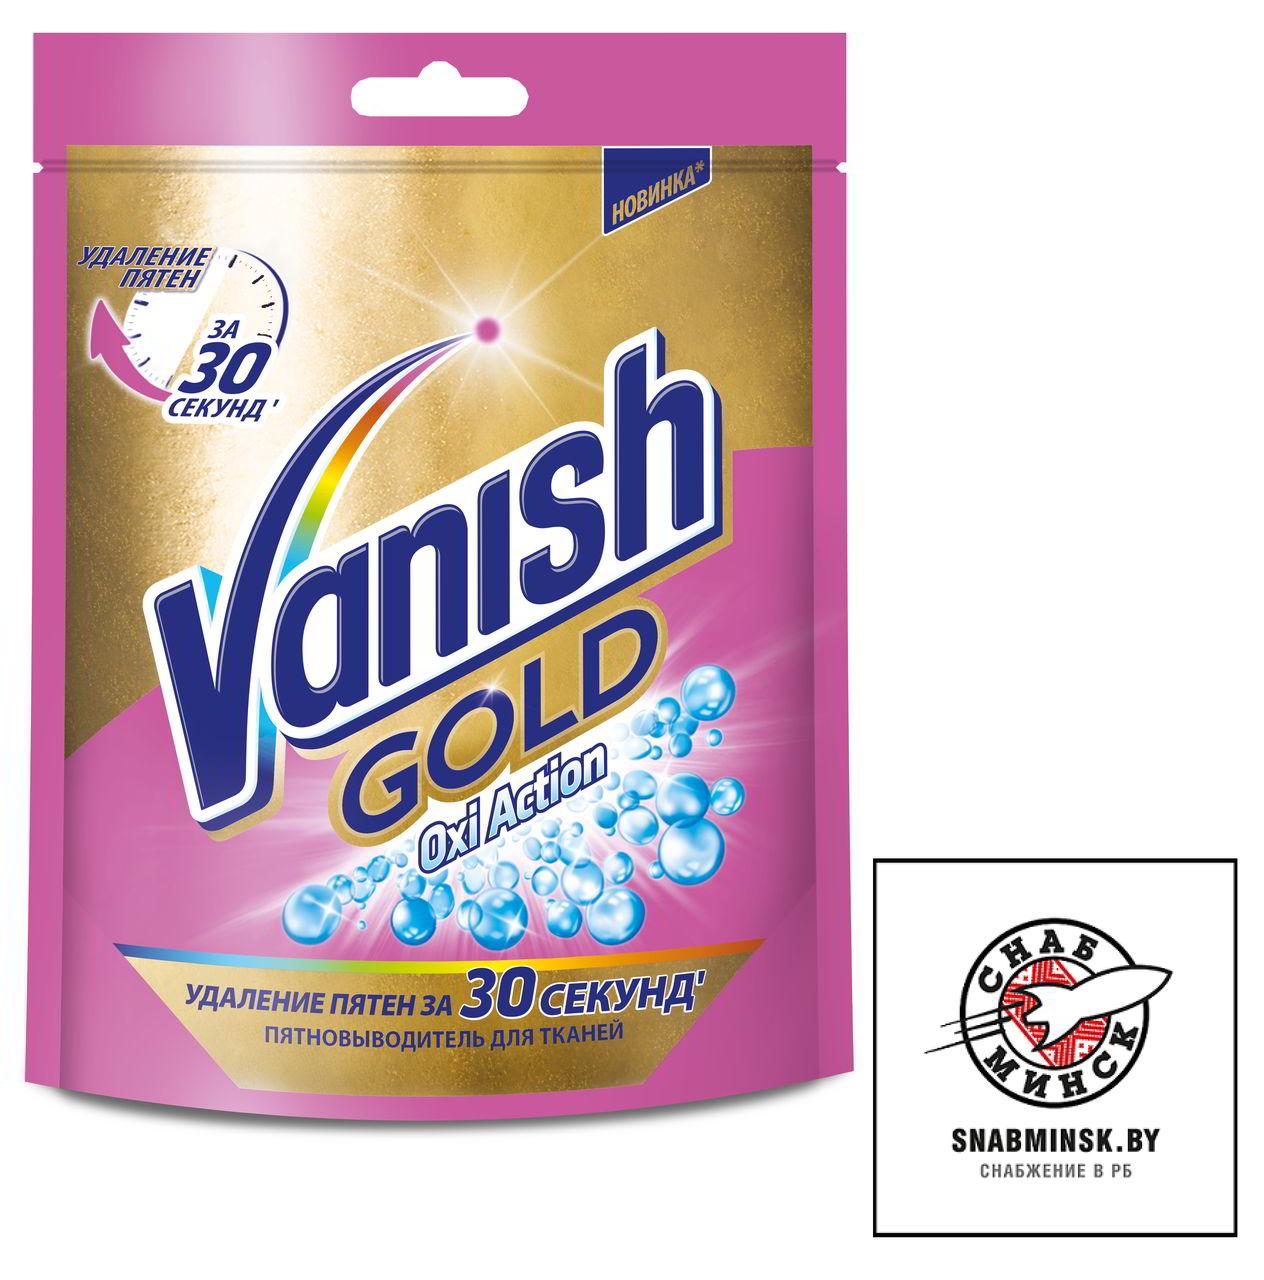 Пятновыводитель VANISH GOLD OXI Action 250г